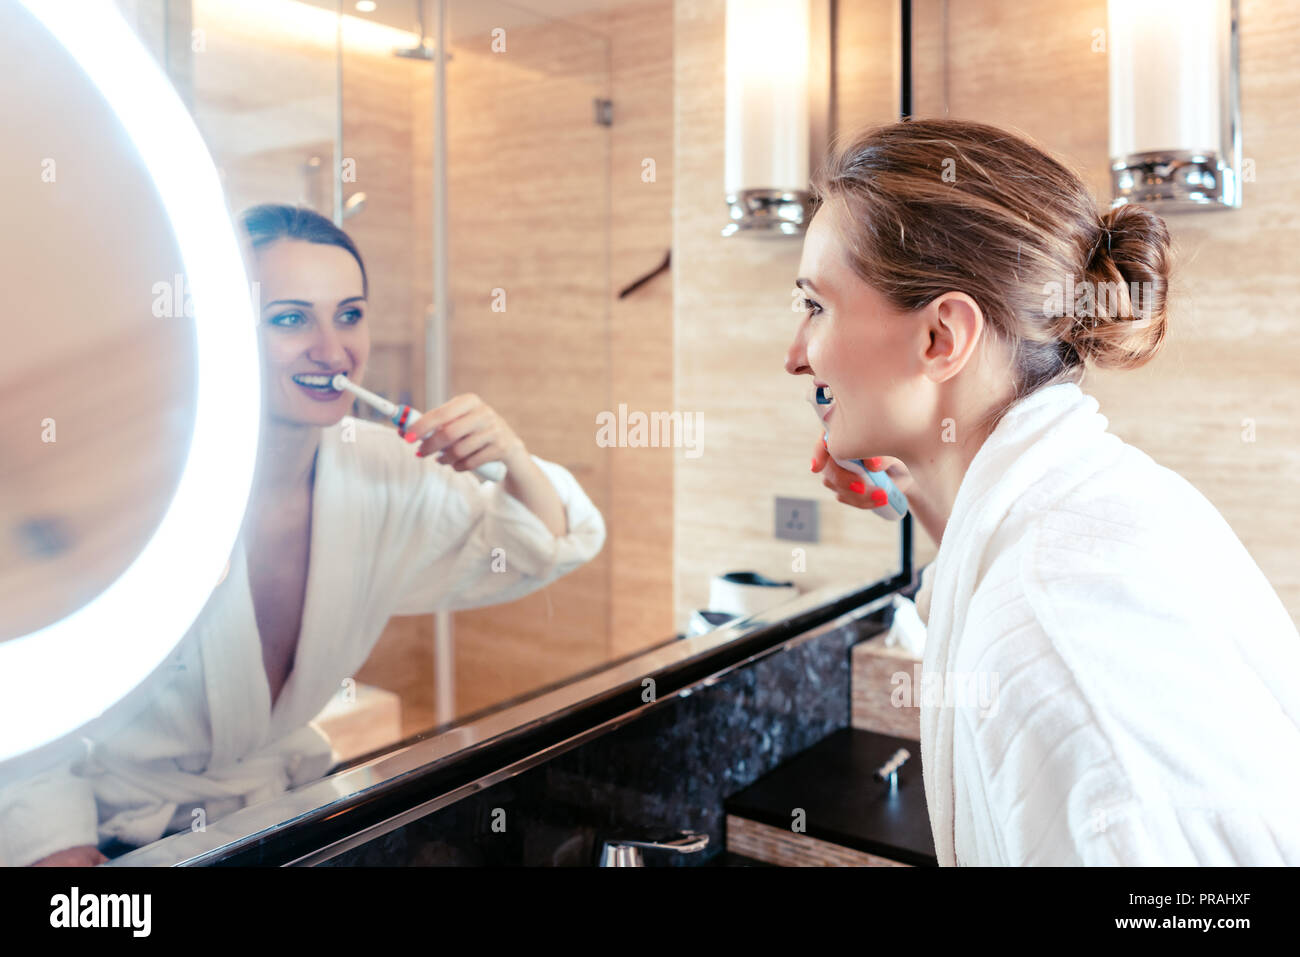 Mujer cepillando sus dientes en un lujoso hotel mirando a sí misma Foto de stock